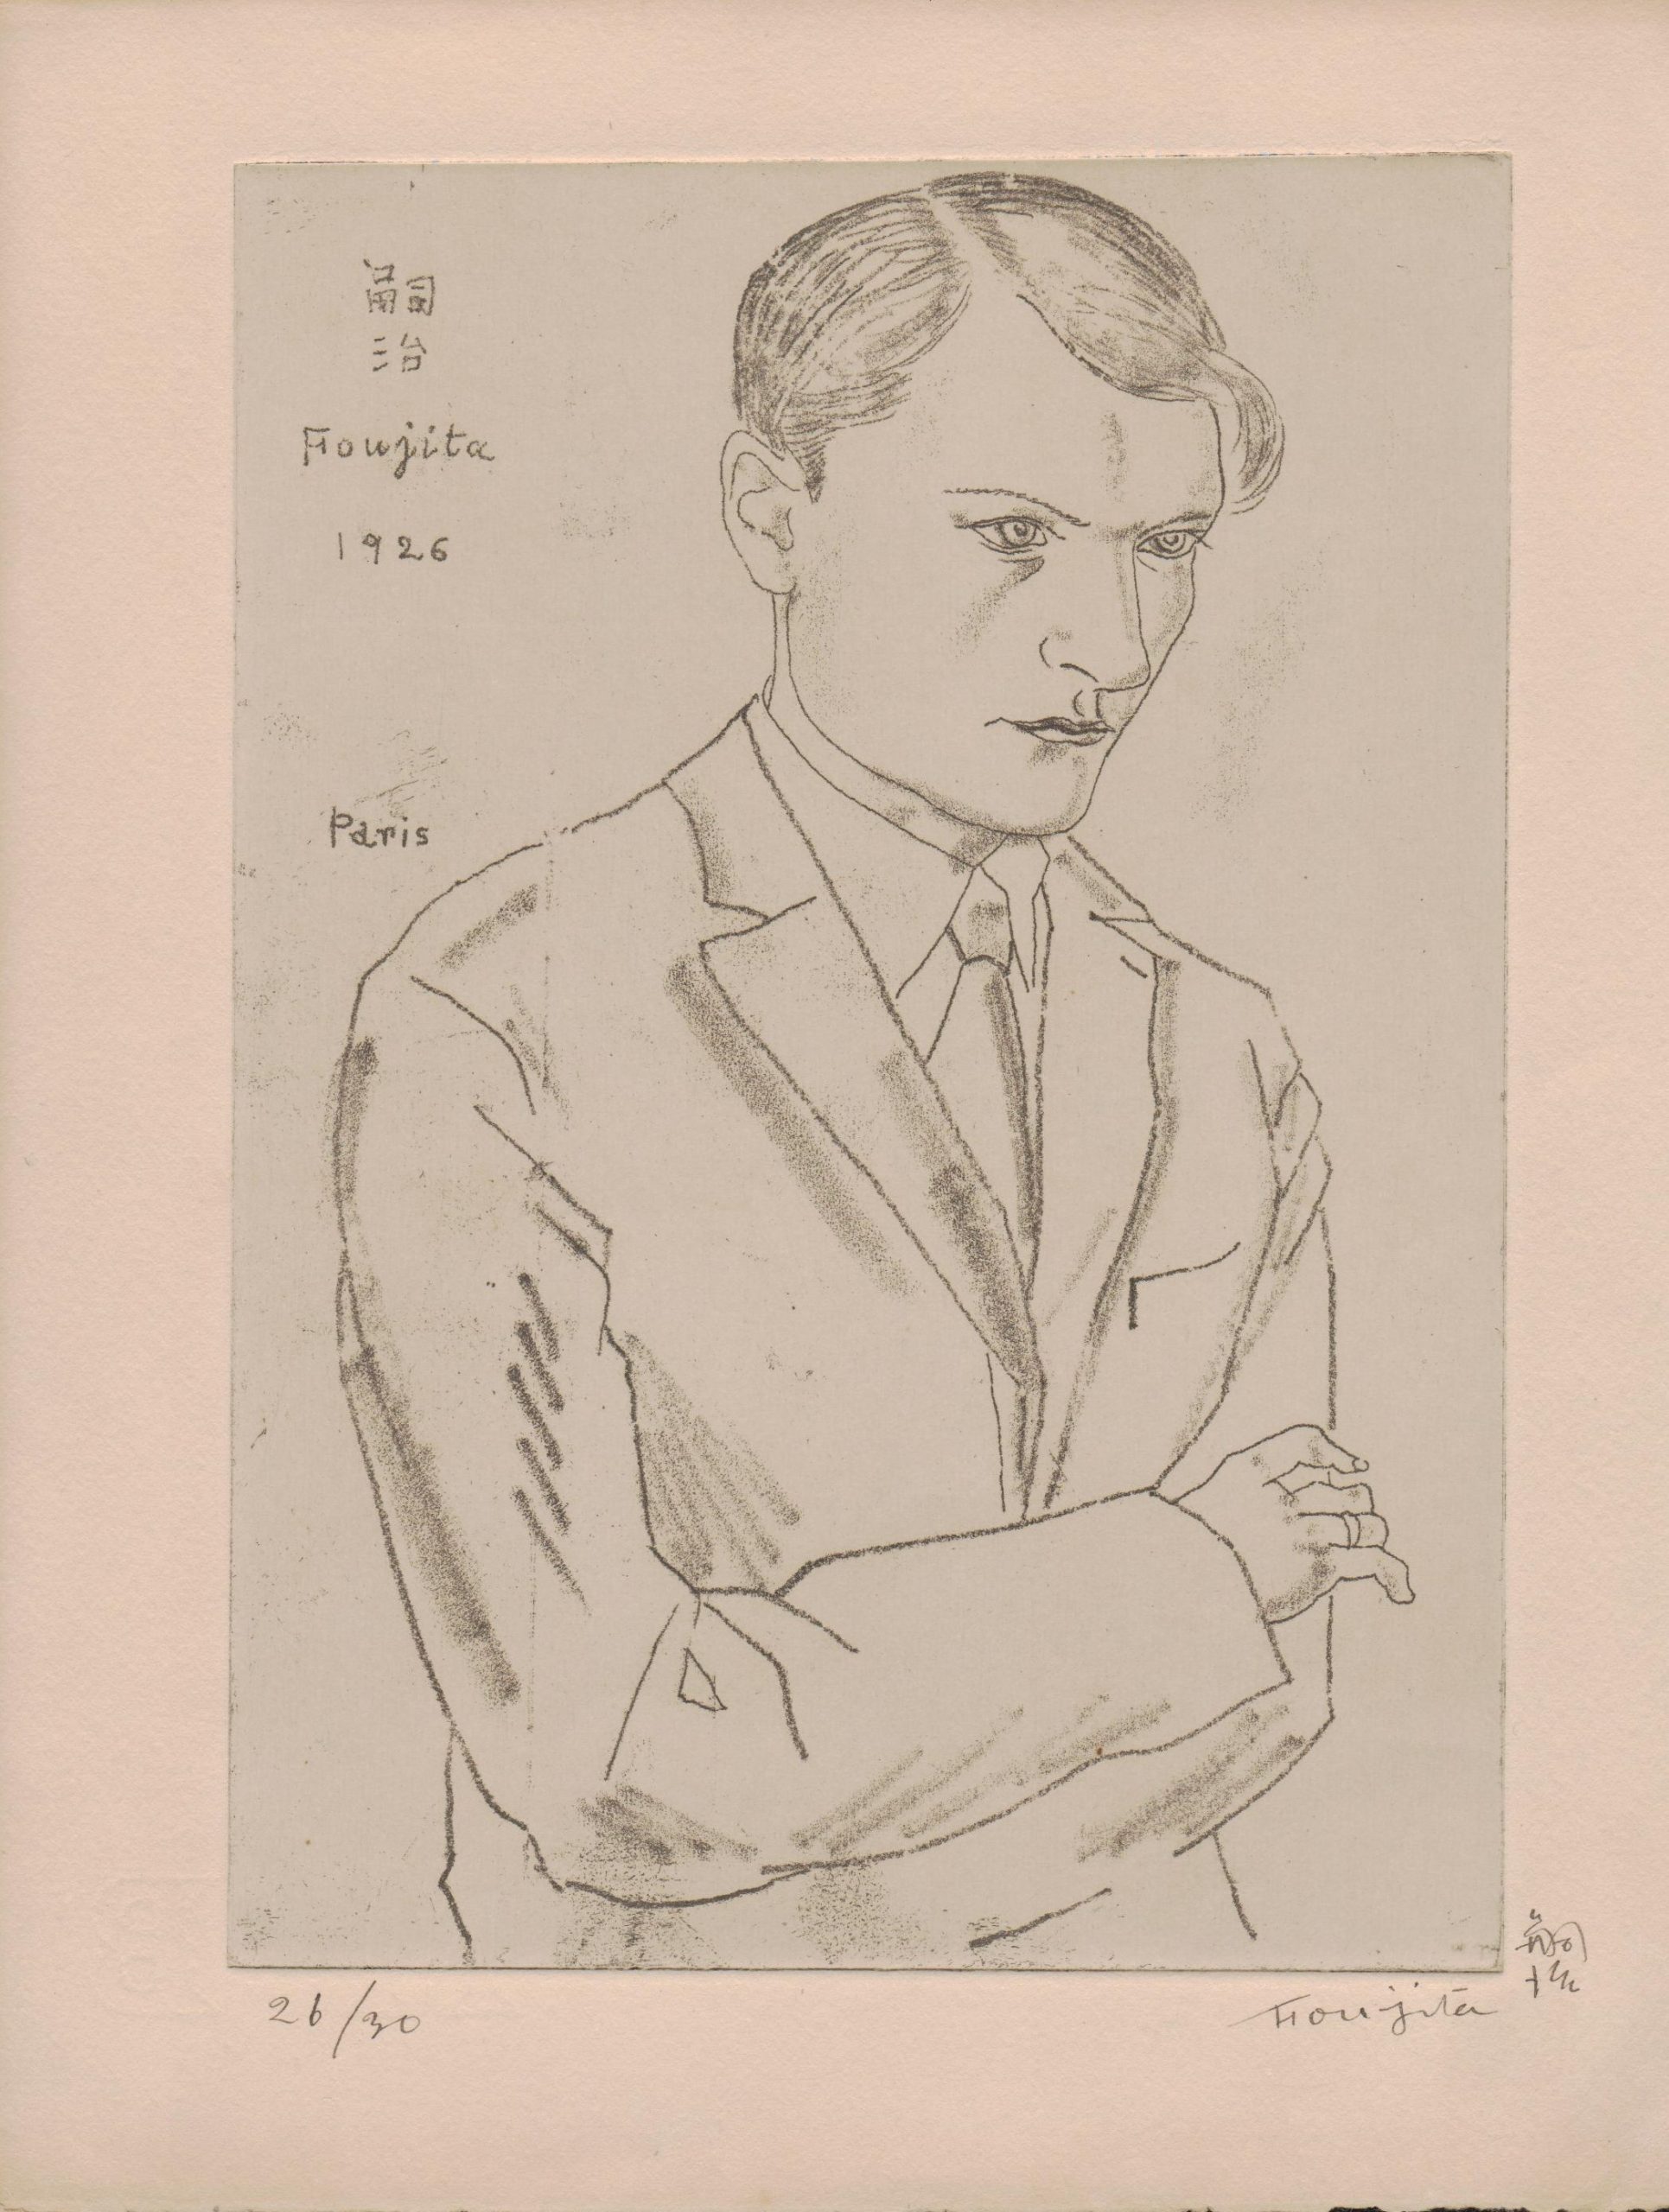 Piešinys. Dailininkas Foujita. Paryžius. 1926 m. MLLM 28656